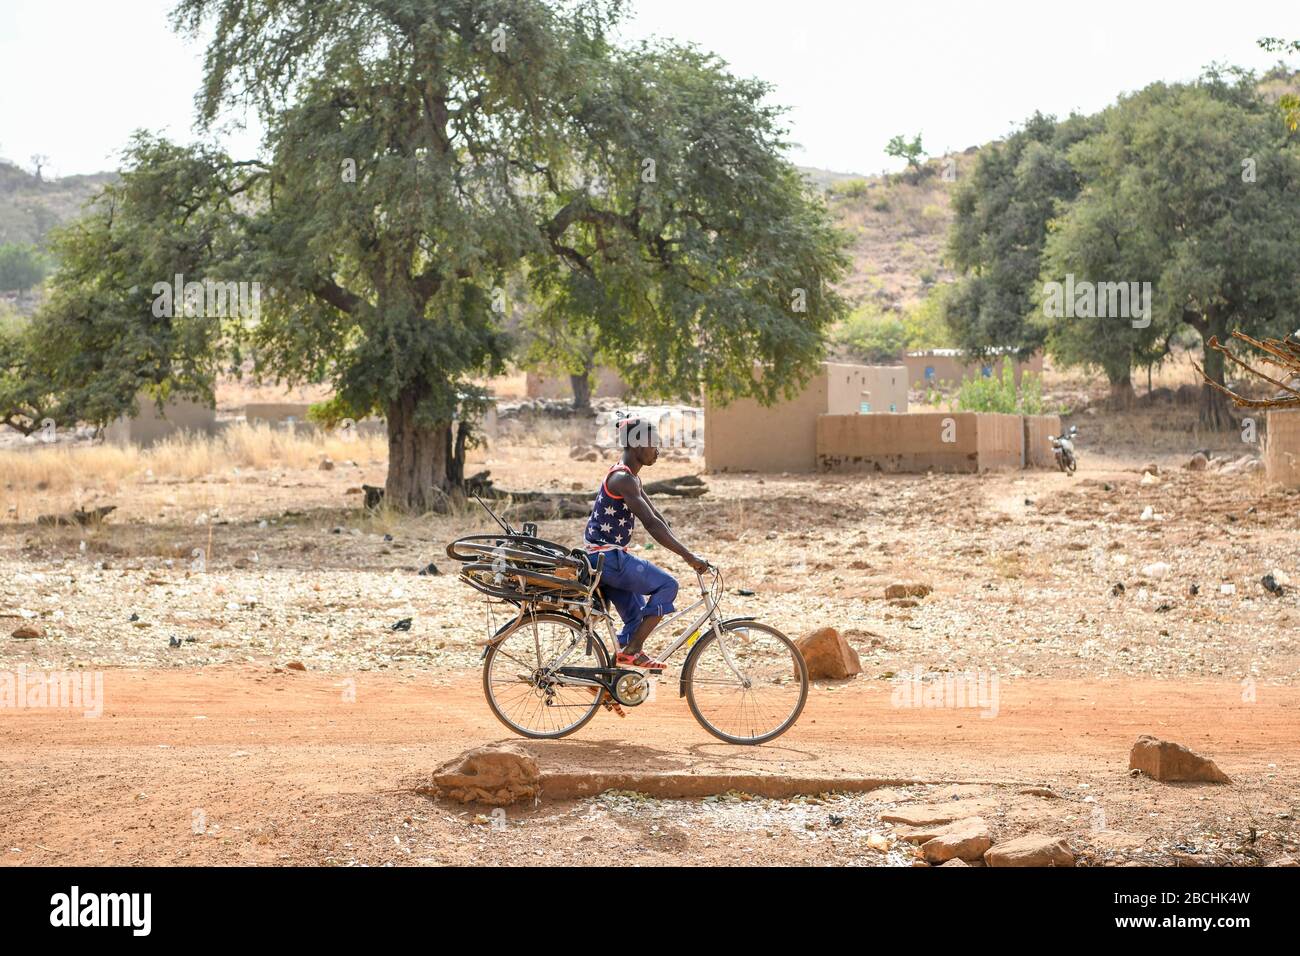 Afrika, Burkina Faso, Region Pô, Tiebele. Ein Mann fährt auf einer unbefestigten Straße mit einem Fahrrad an seinem Fahrrad Stockfoto